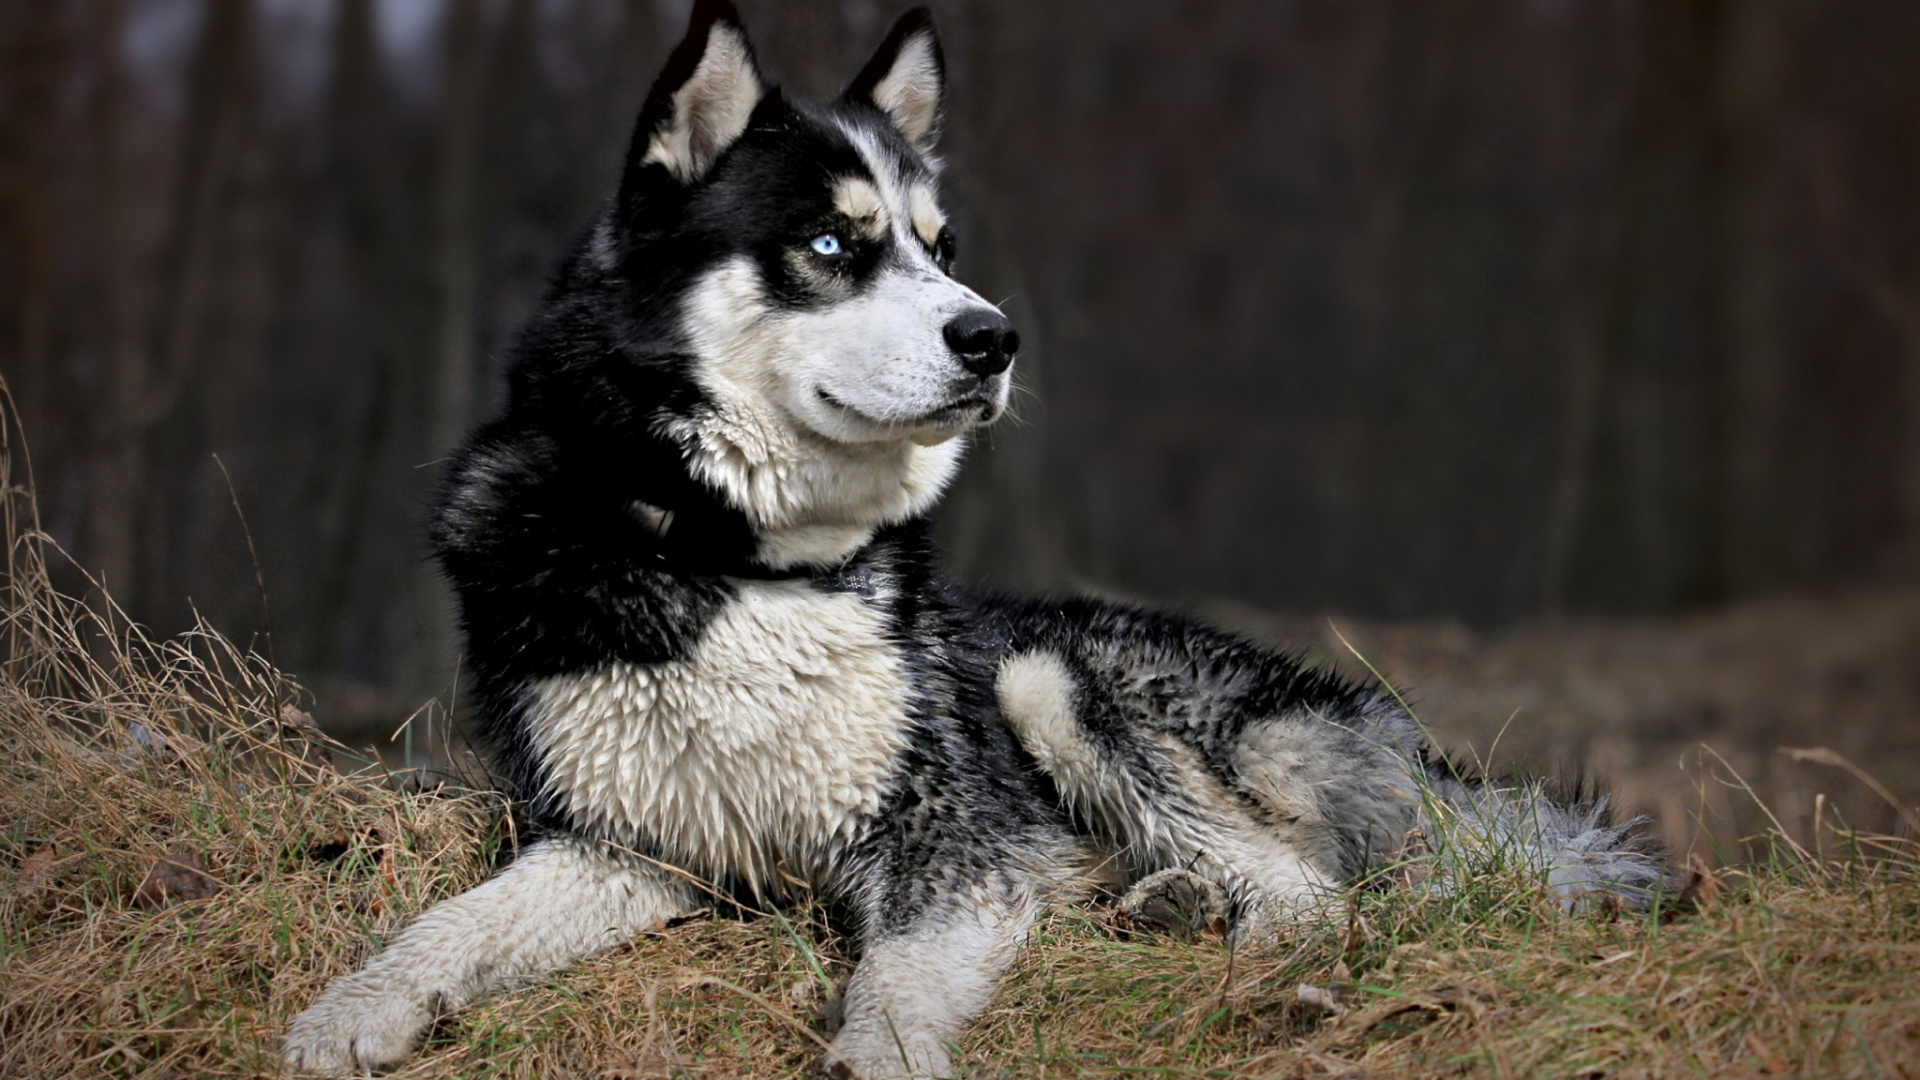 阿拉斯加雪橇犬, 品种的狗, 萨哈林赫斯基, 东西伯利亚的莱卡, 格陵兰的狗 壁纸 1920x1080 允许